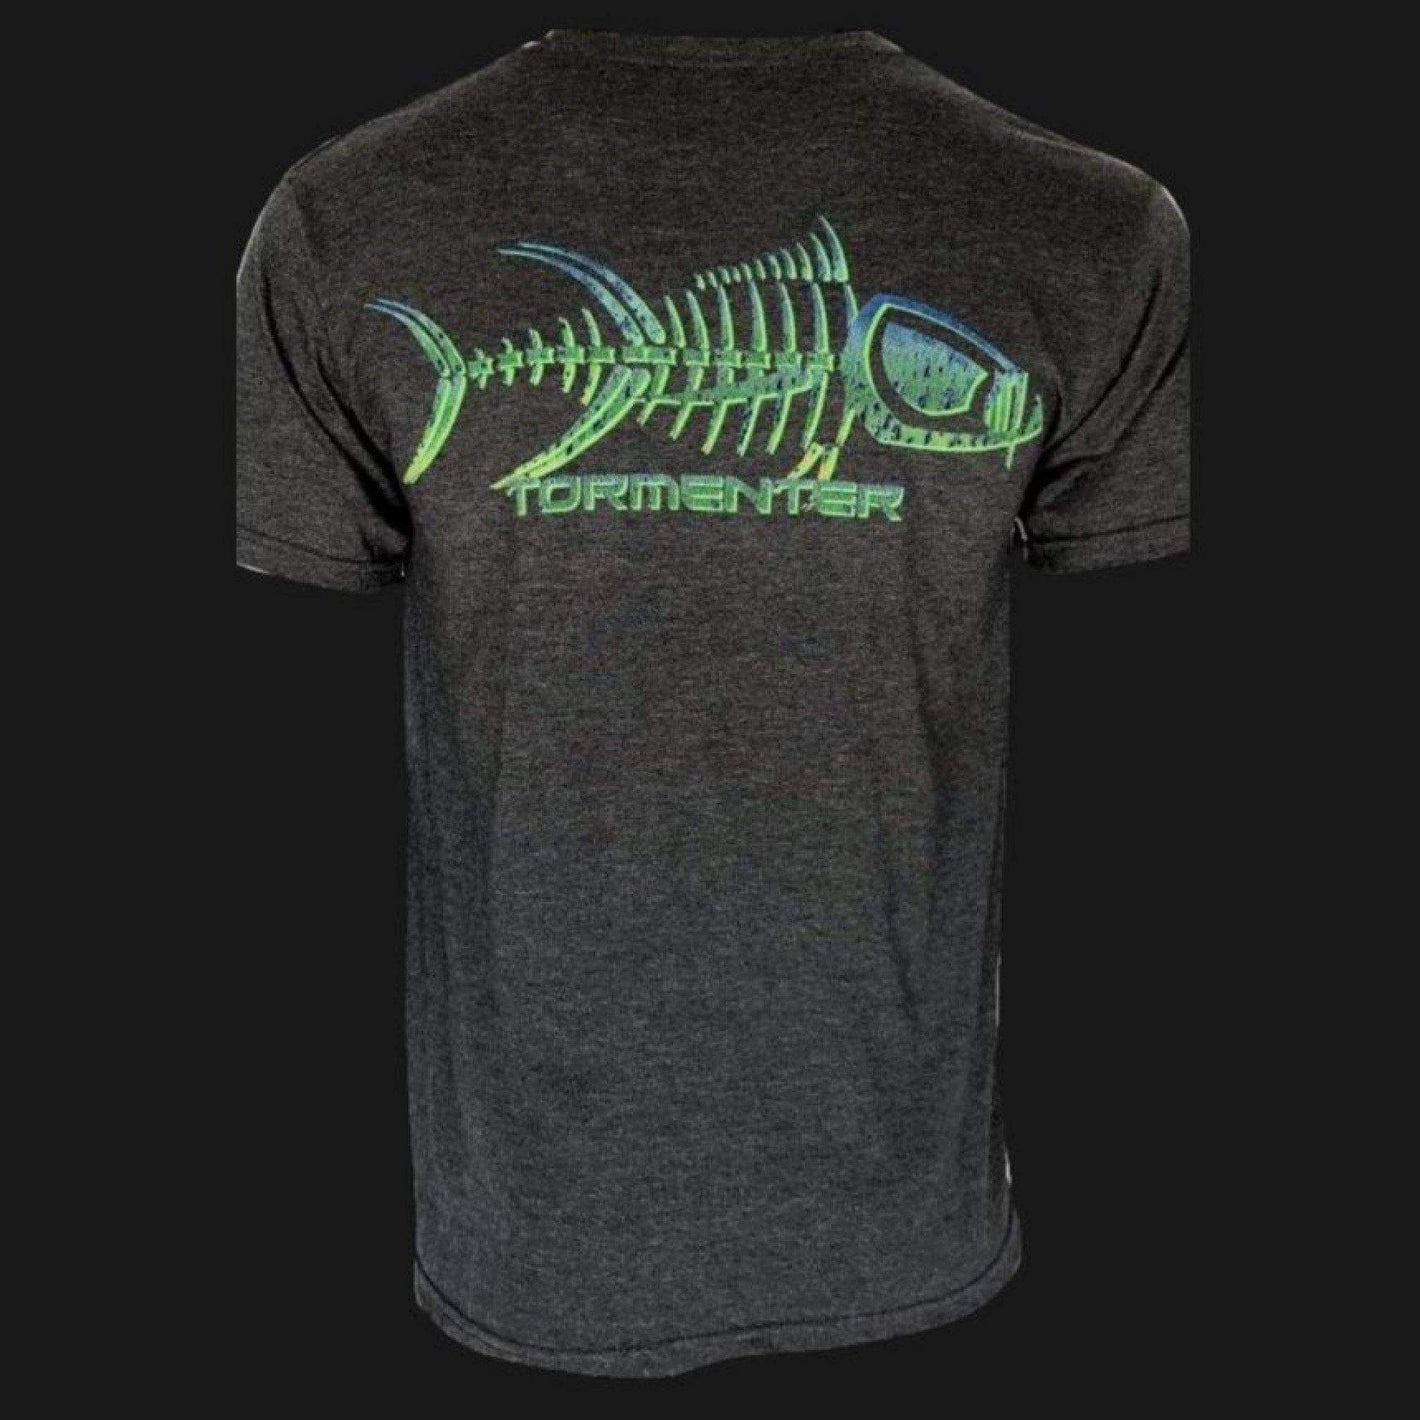 Mahi Skin Charcoal Gray Men’s Fishing T-Shirt Fishing T-Shirts Tormenter Ocean 